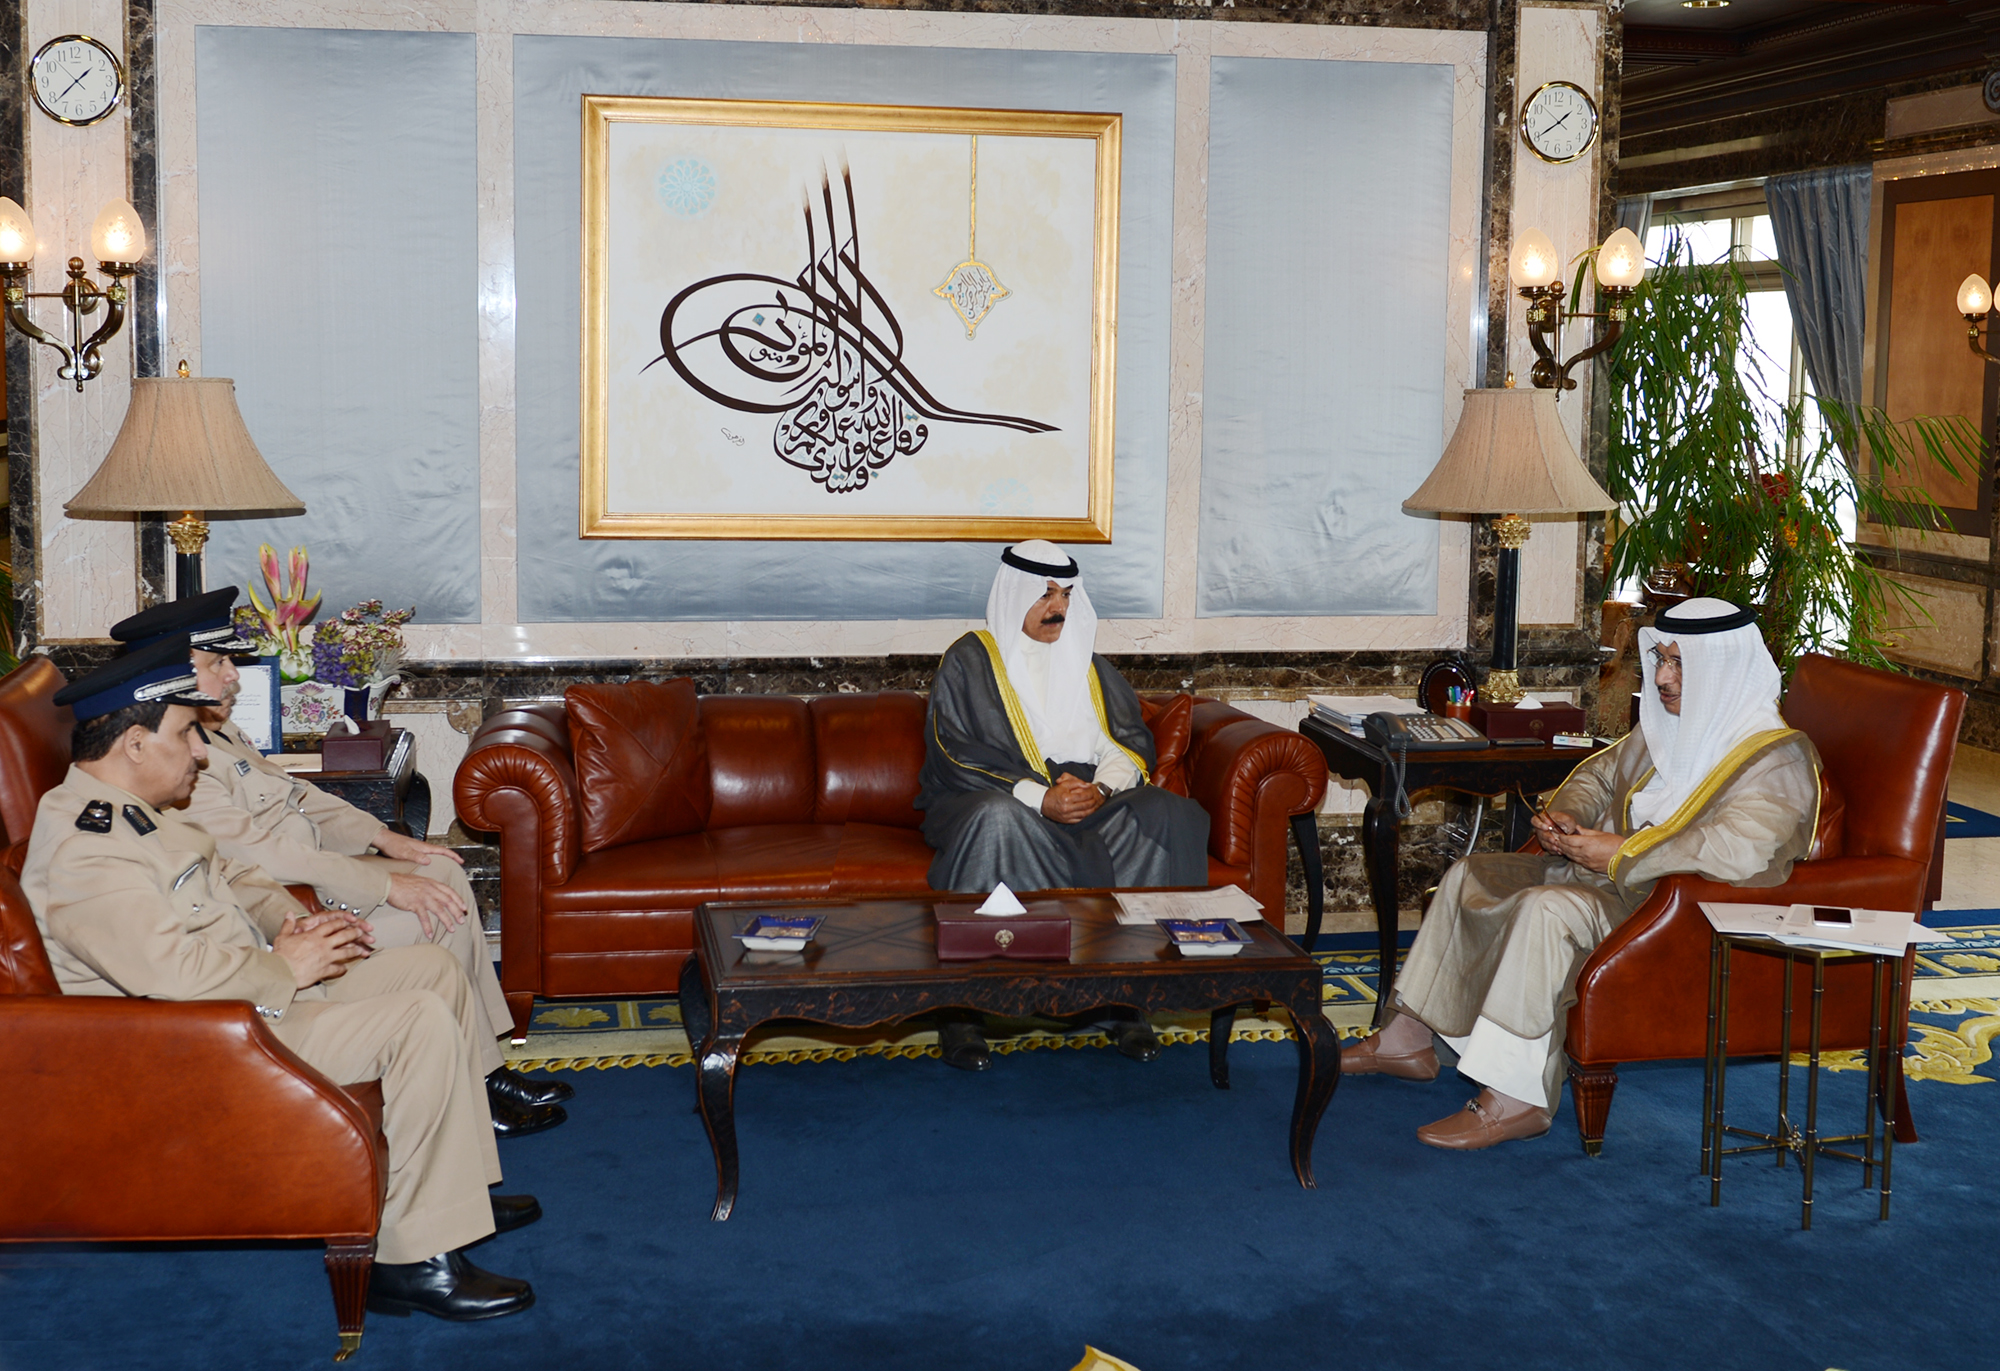 His Highness the Prime Minister Sheikh Jaber Al-Mubarak Al-Hamad Al-Sabah received Deputy Prime Minister and Interior Minister Sheikh Mohammad Al-Khaled Al-Hamad Al-Sabah